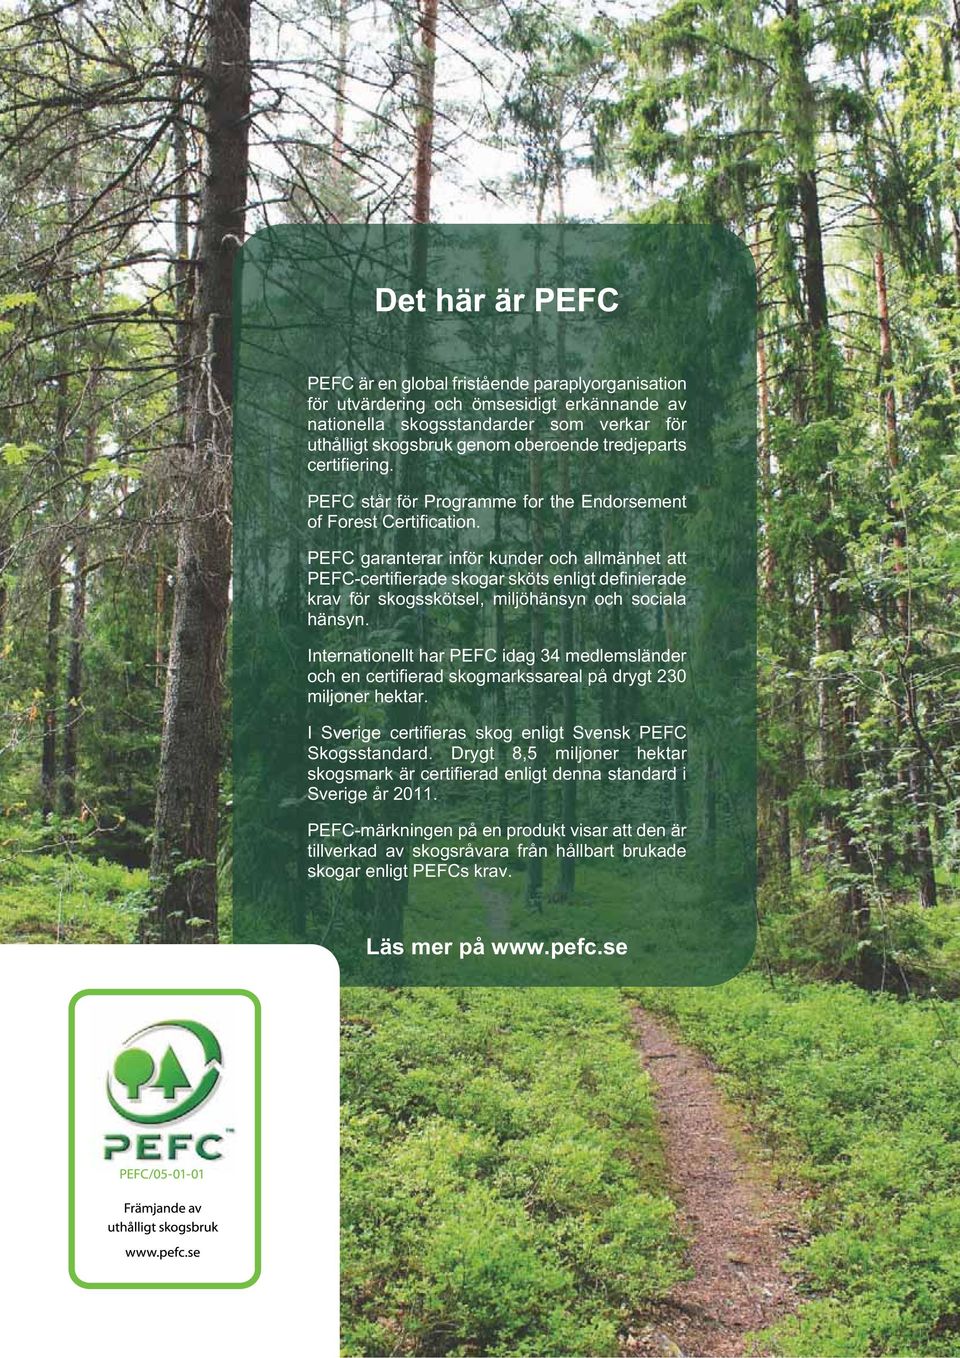 PEFC garanterar inför kunder och allmänhet att PEFC-certifierade skogar sköts enligt definierade krav för skogsskötsel, miljöhänsyn och sociala hänsyn.